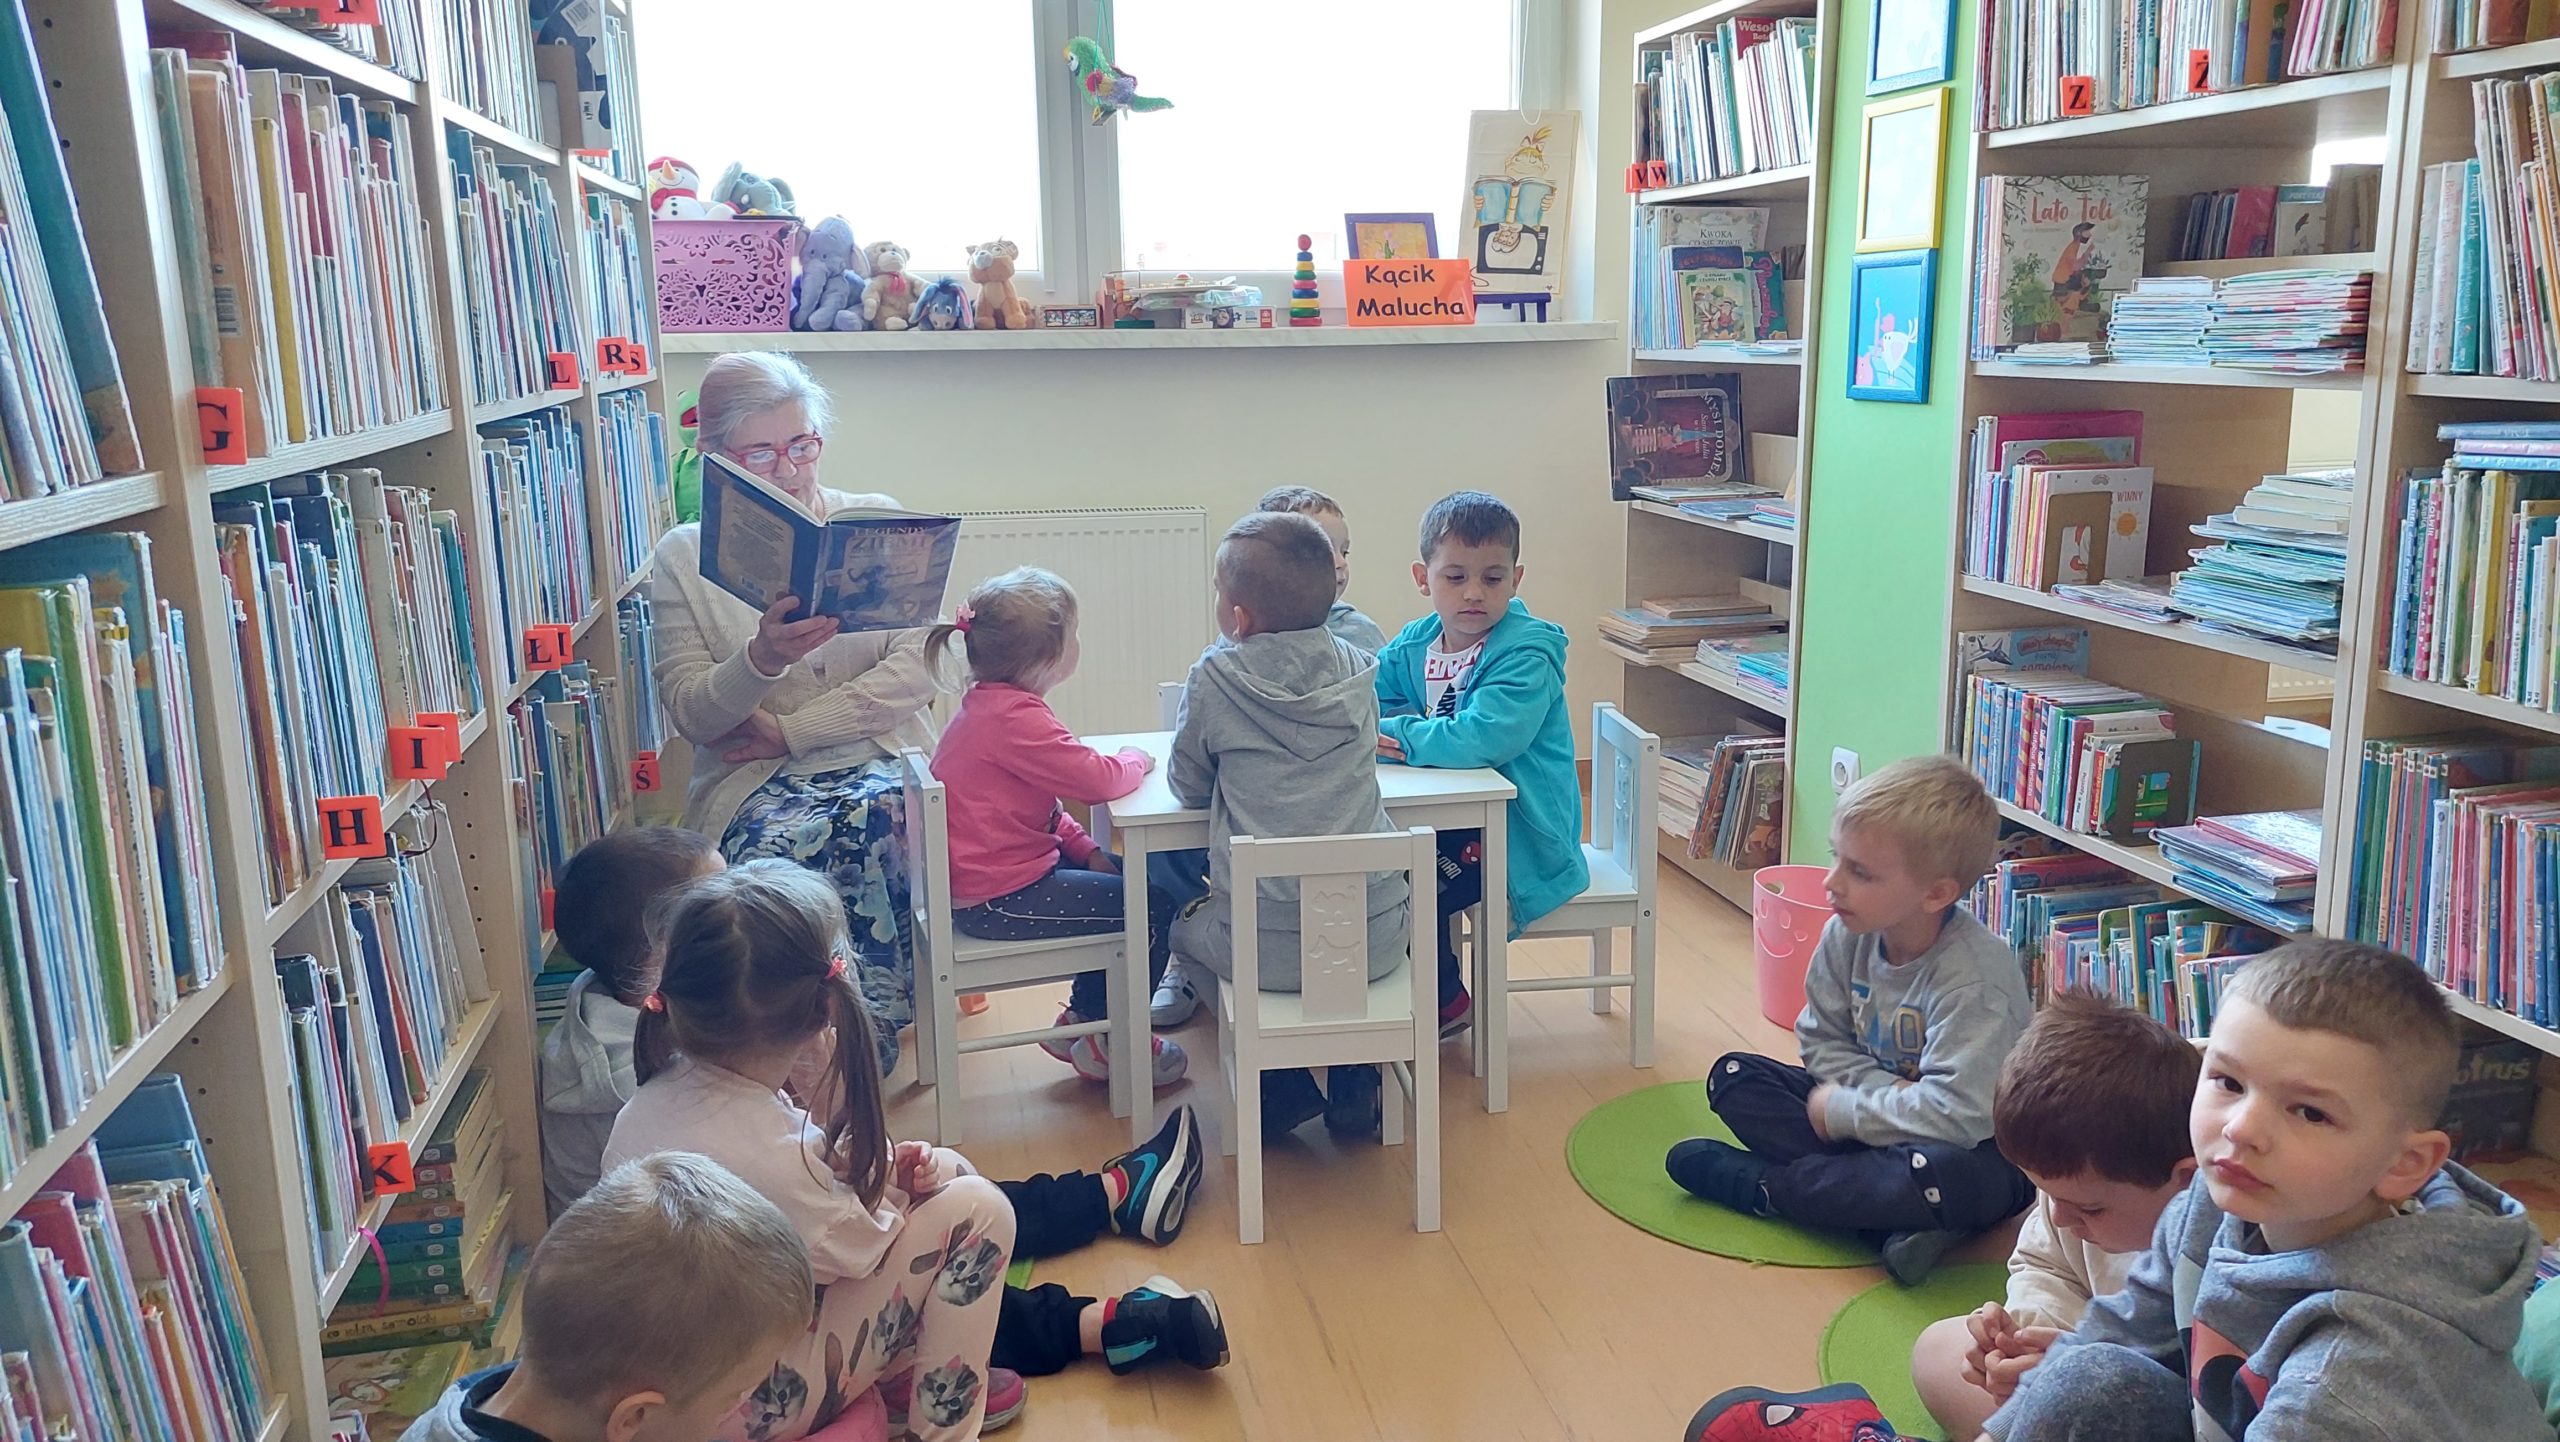 Kącik malucha. Dzieci siedzą na krzesełkach i dywanikach, obok kobieta czyta legendę z książki.